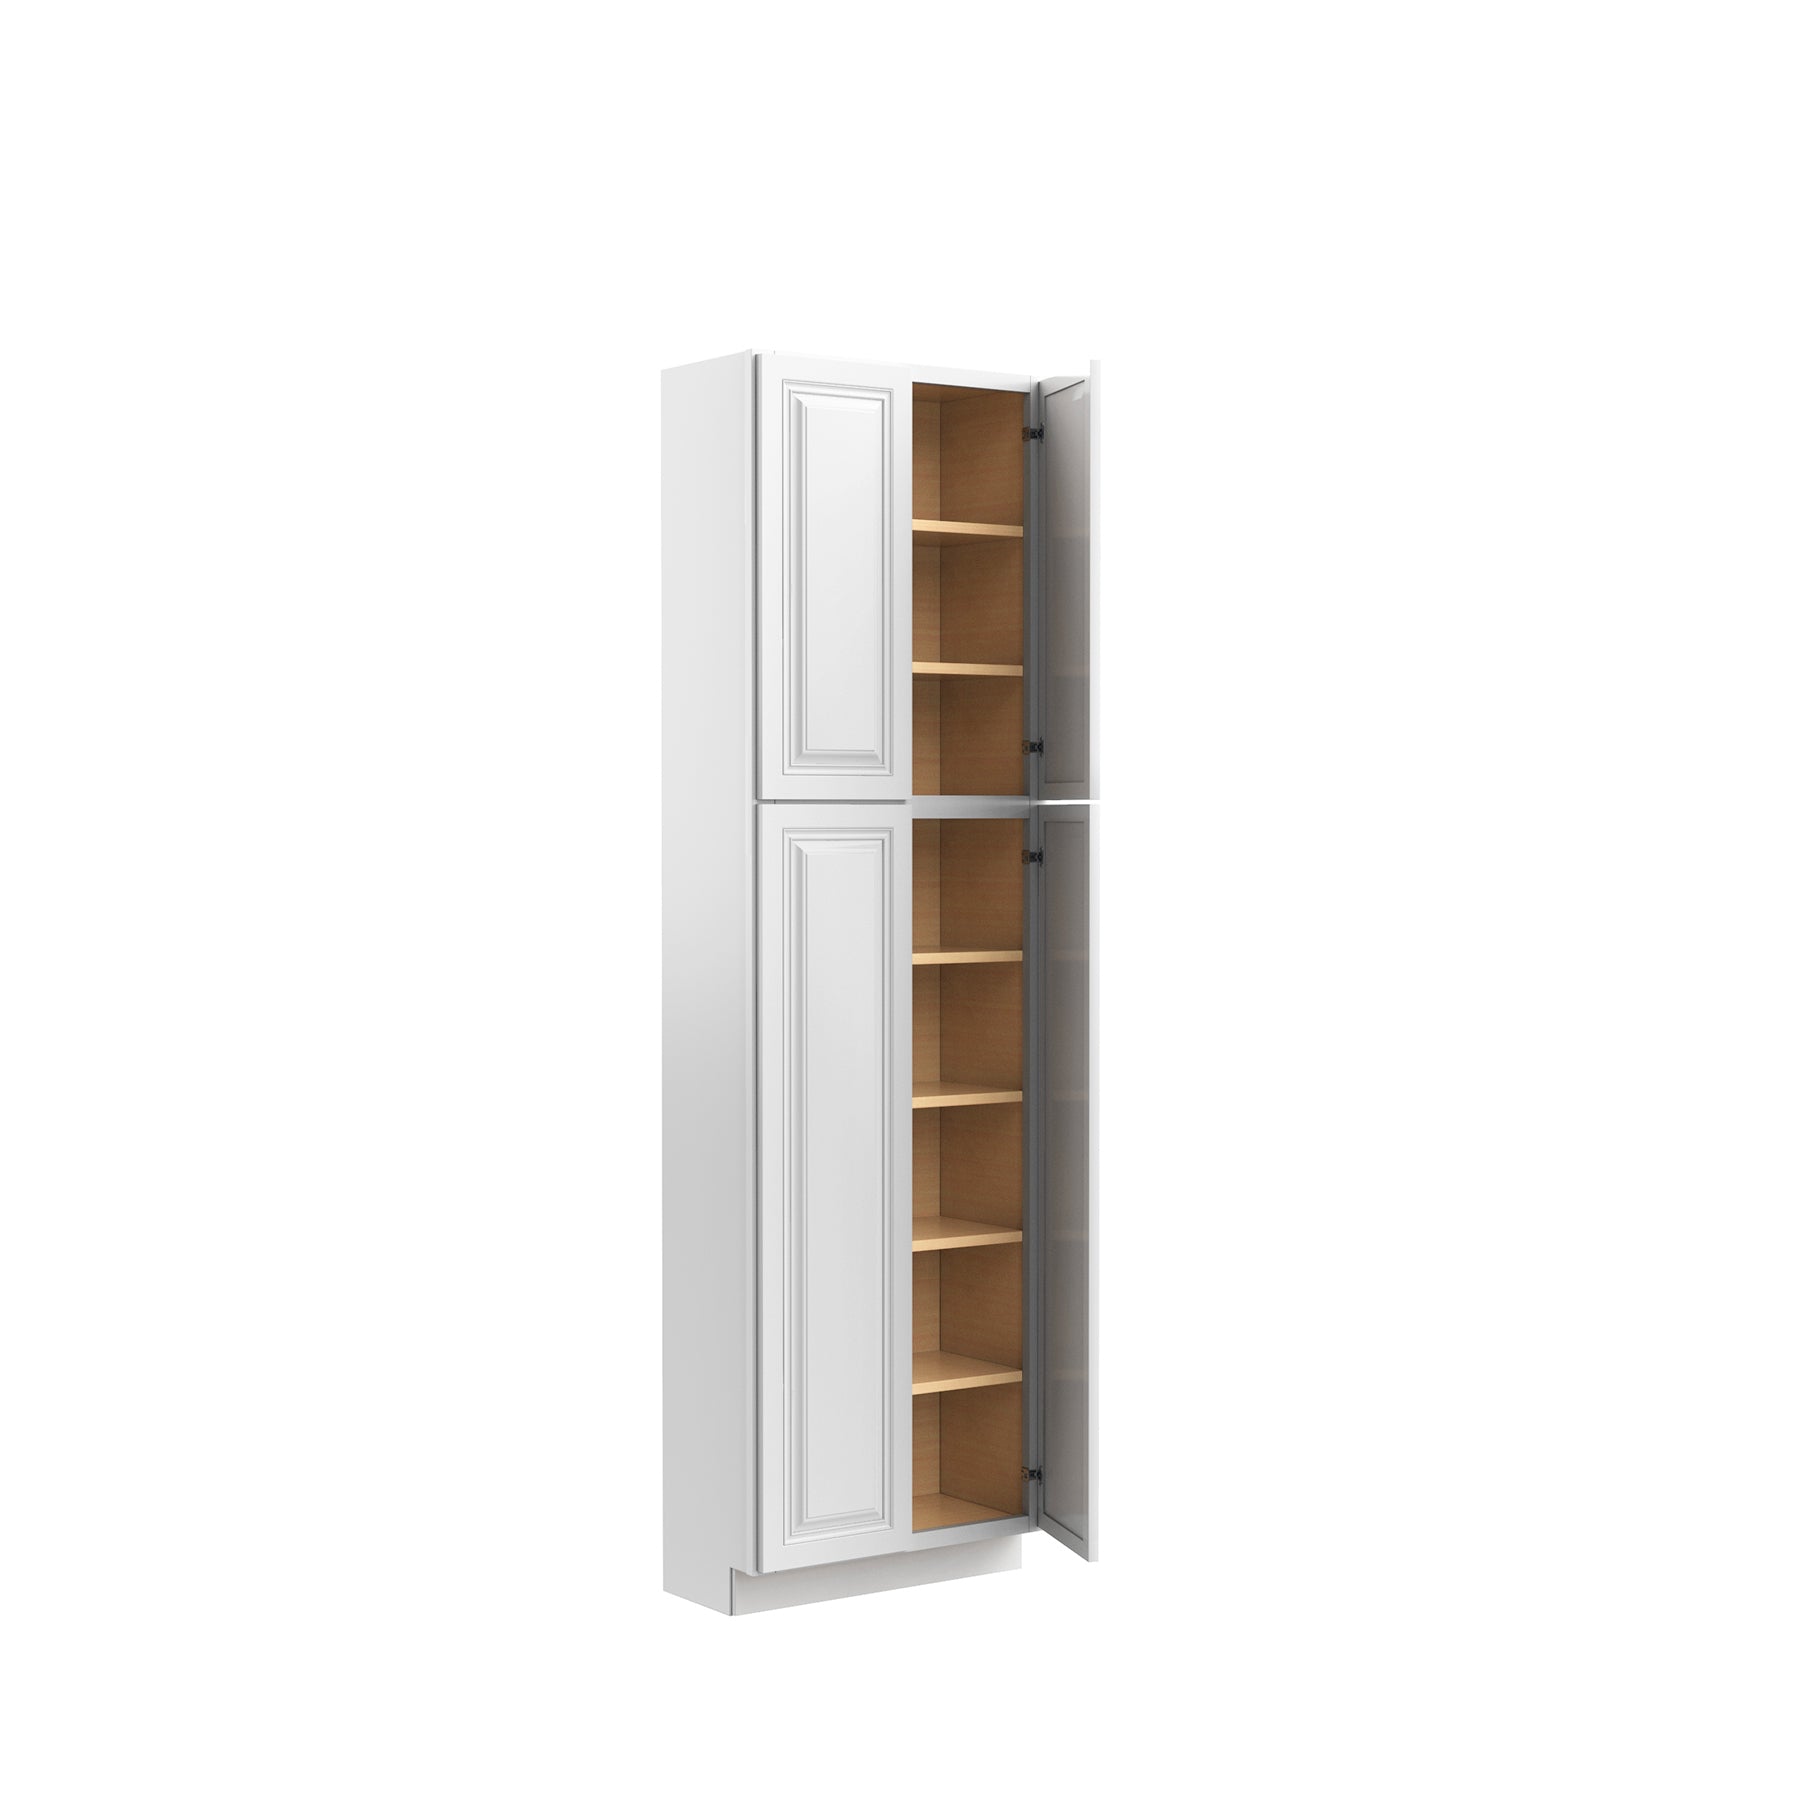 RTA - Park Avenue White - Double Door Utility Cabinet | 24"W x 84"H x 12"D